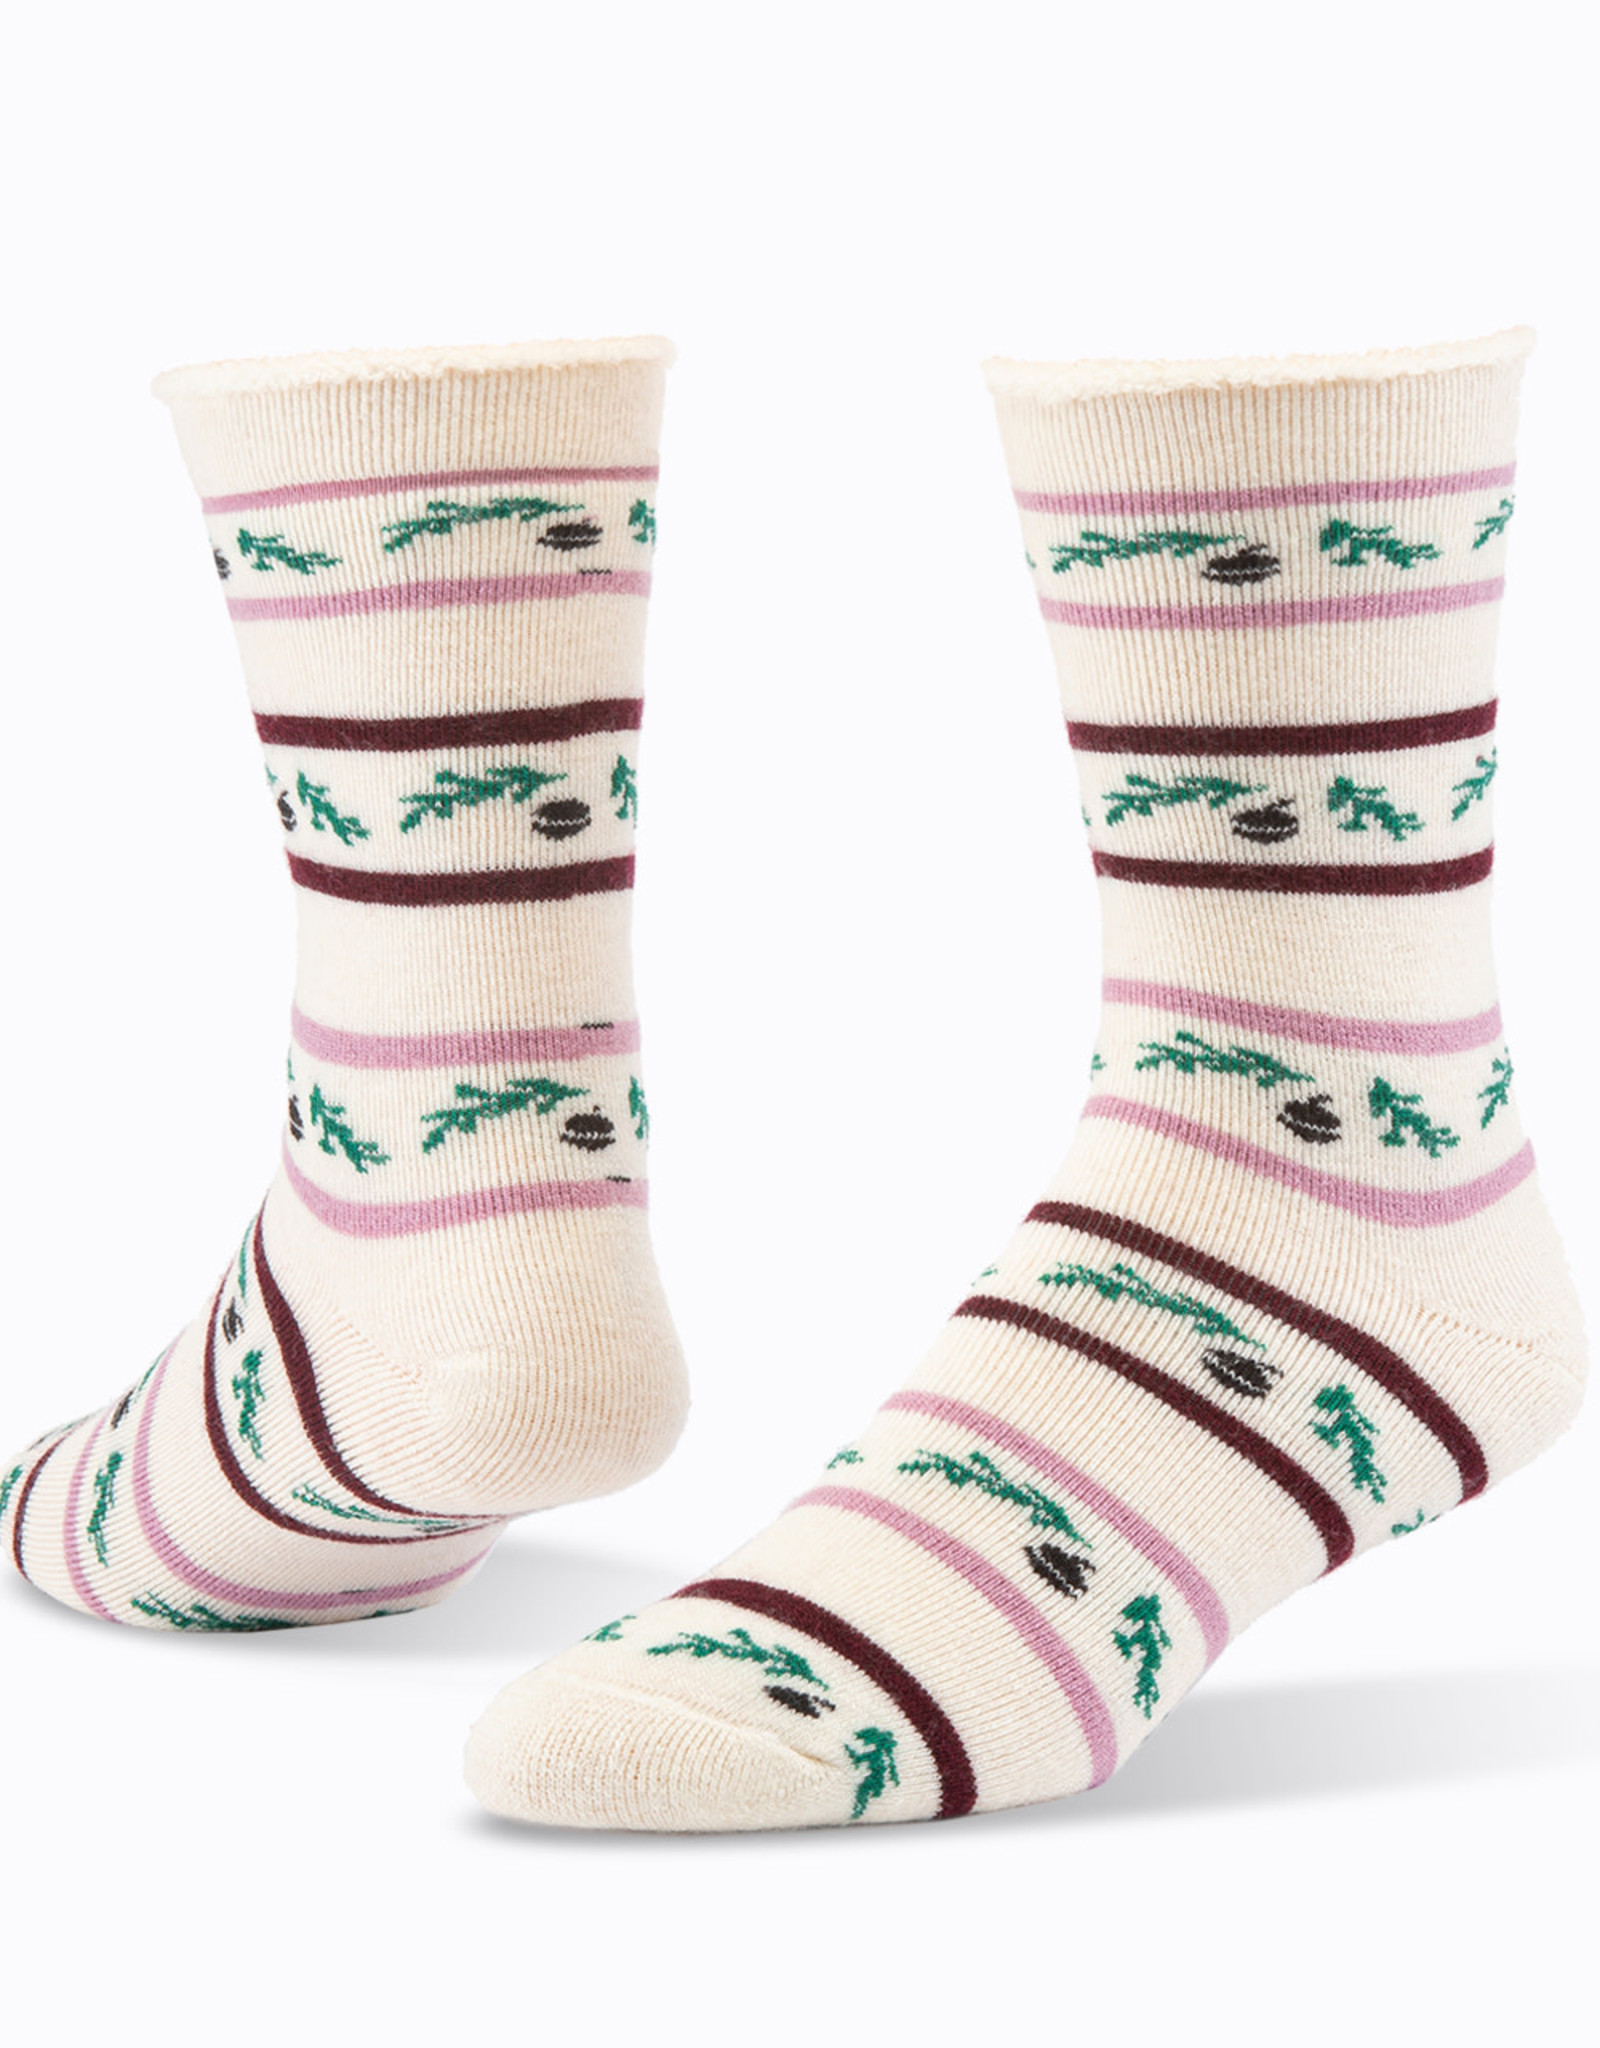 Maggie's Organics Wool Snuggle Socks (Acorn White)